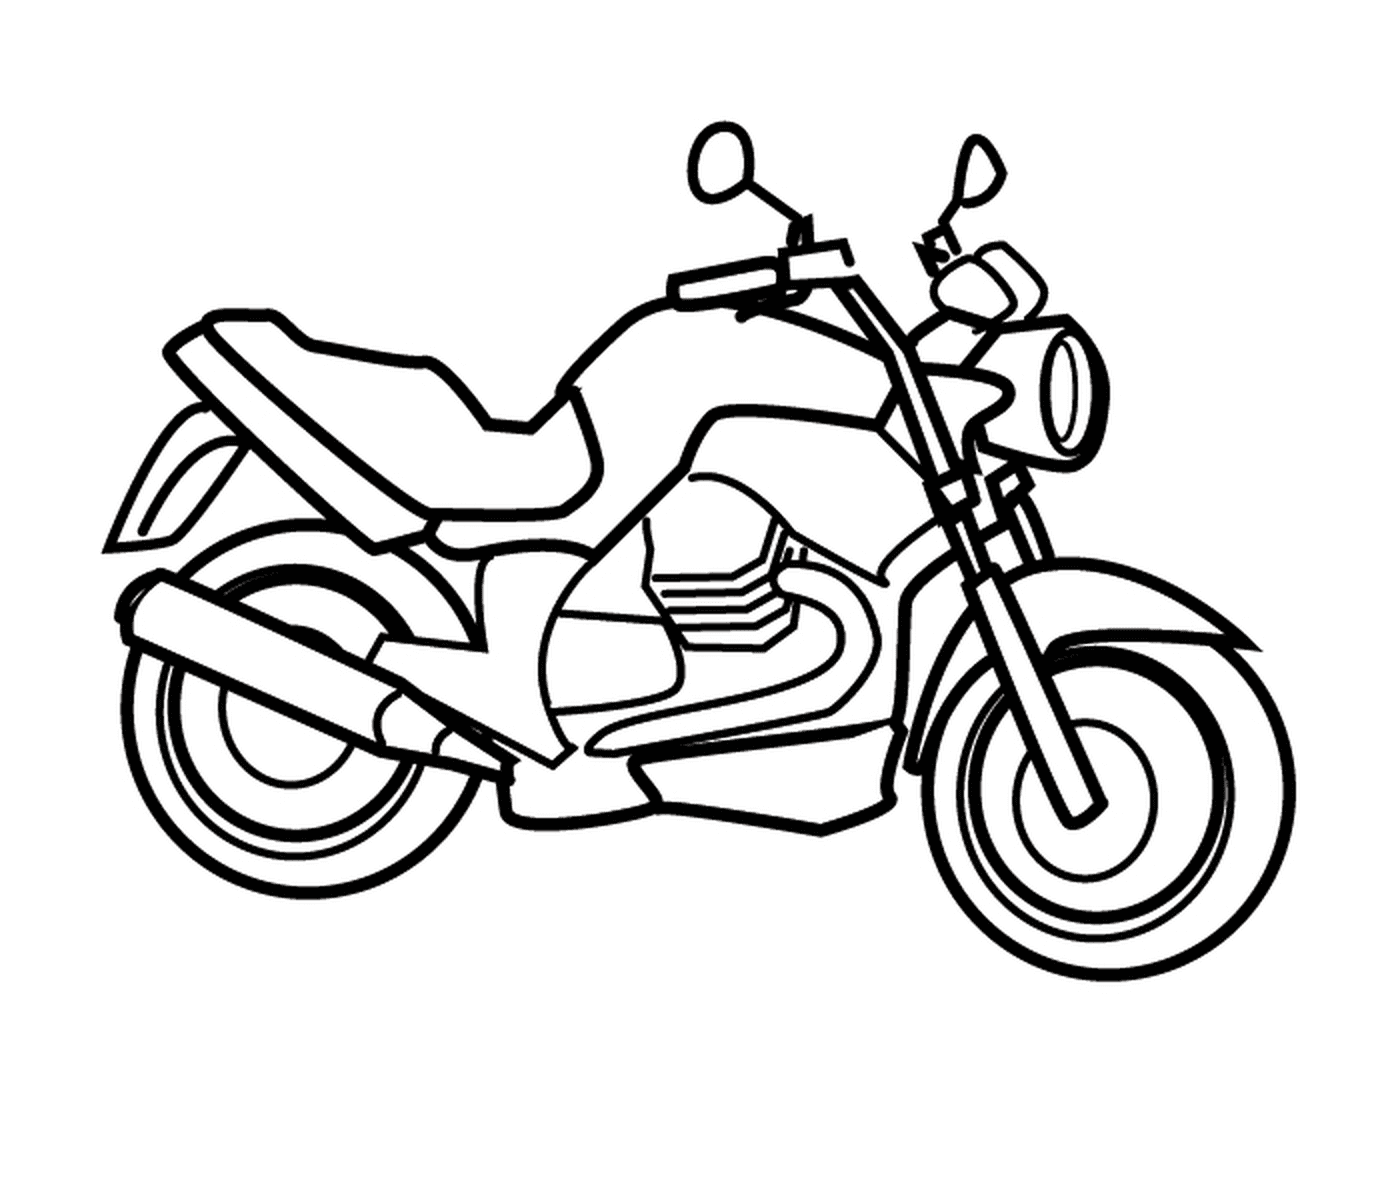  motocicleta elegante y con estilo 